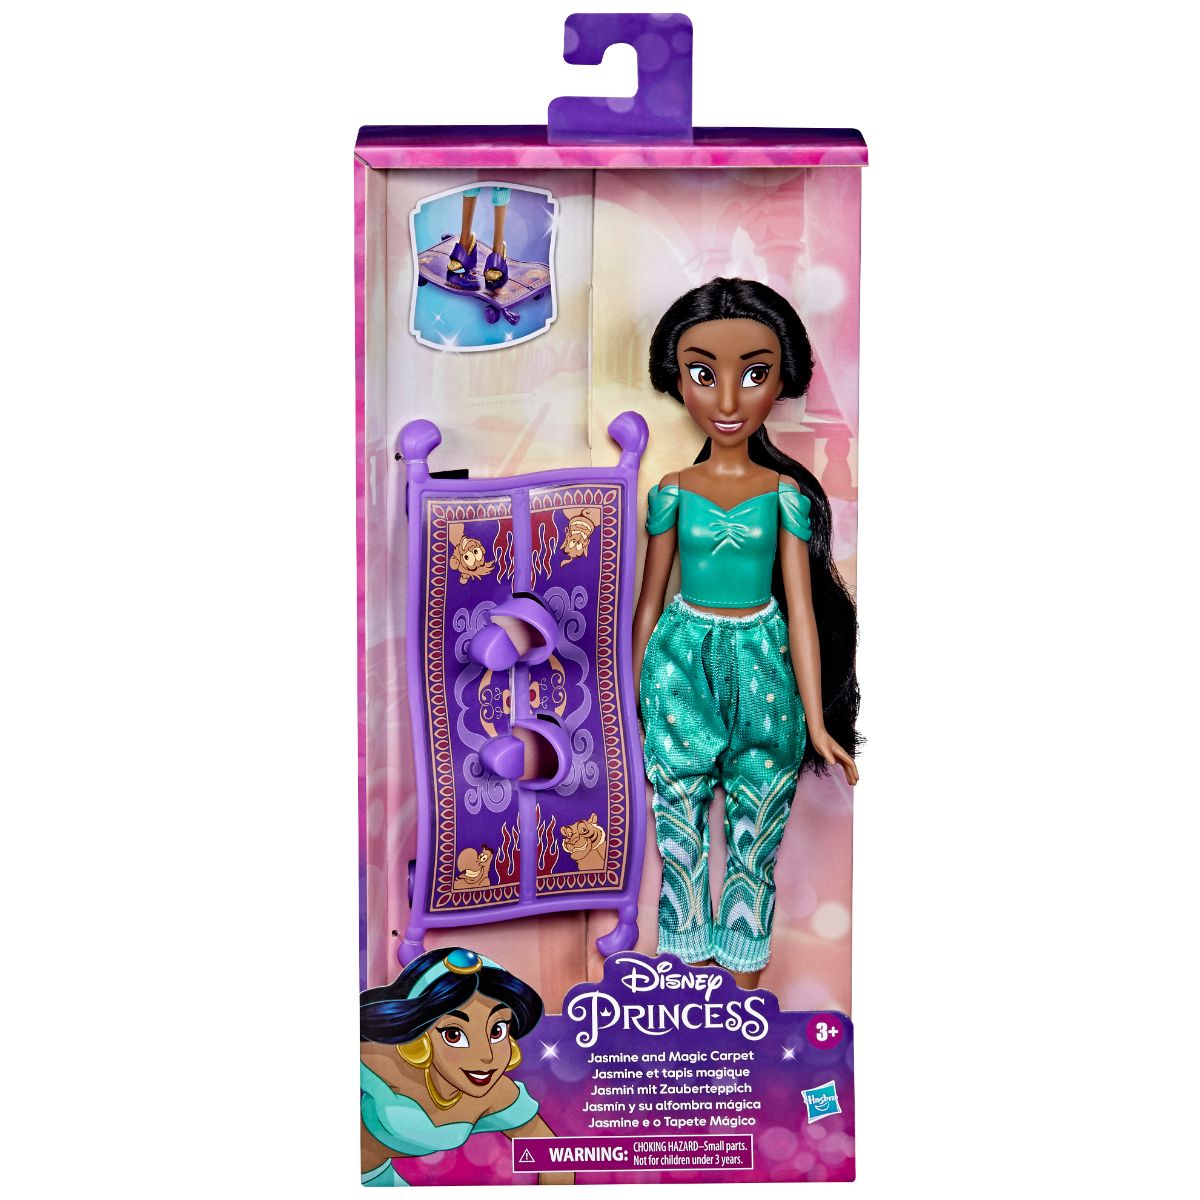 Papusa Everyday Adventures Disney Princess, Jasmine and magic carpet, F3388EU40 Disney Princess